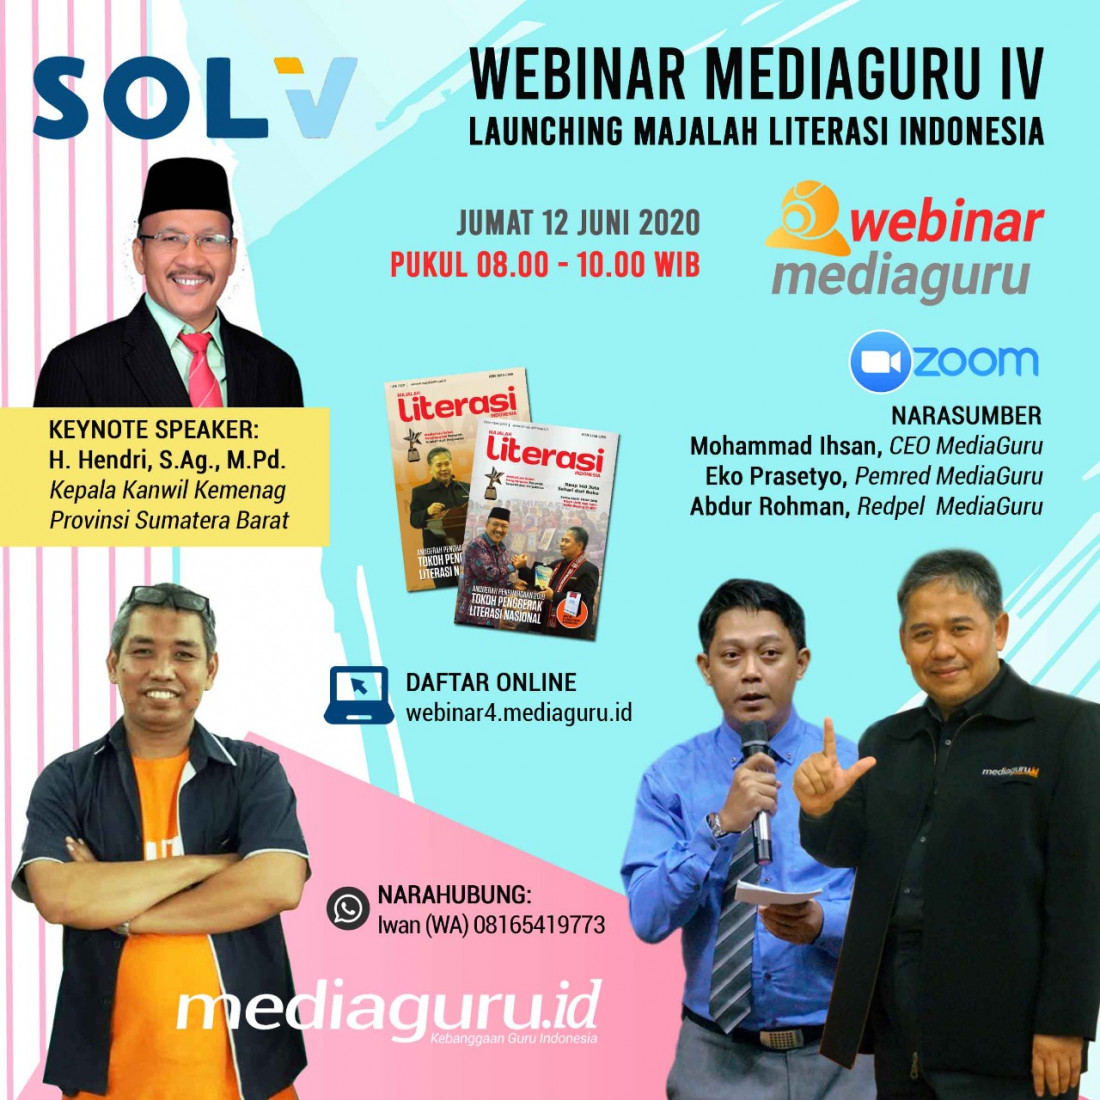 Webinar MediaGuru IV Launching Majalah Literasi Indonesia (12 Juni 2020)